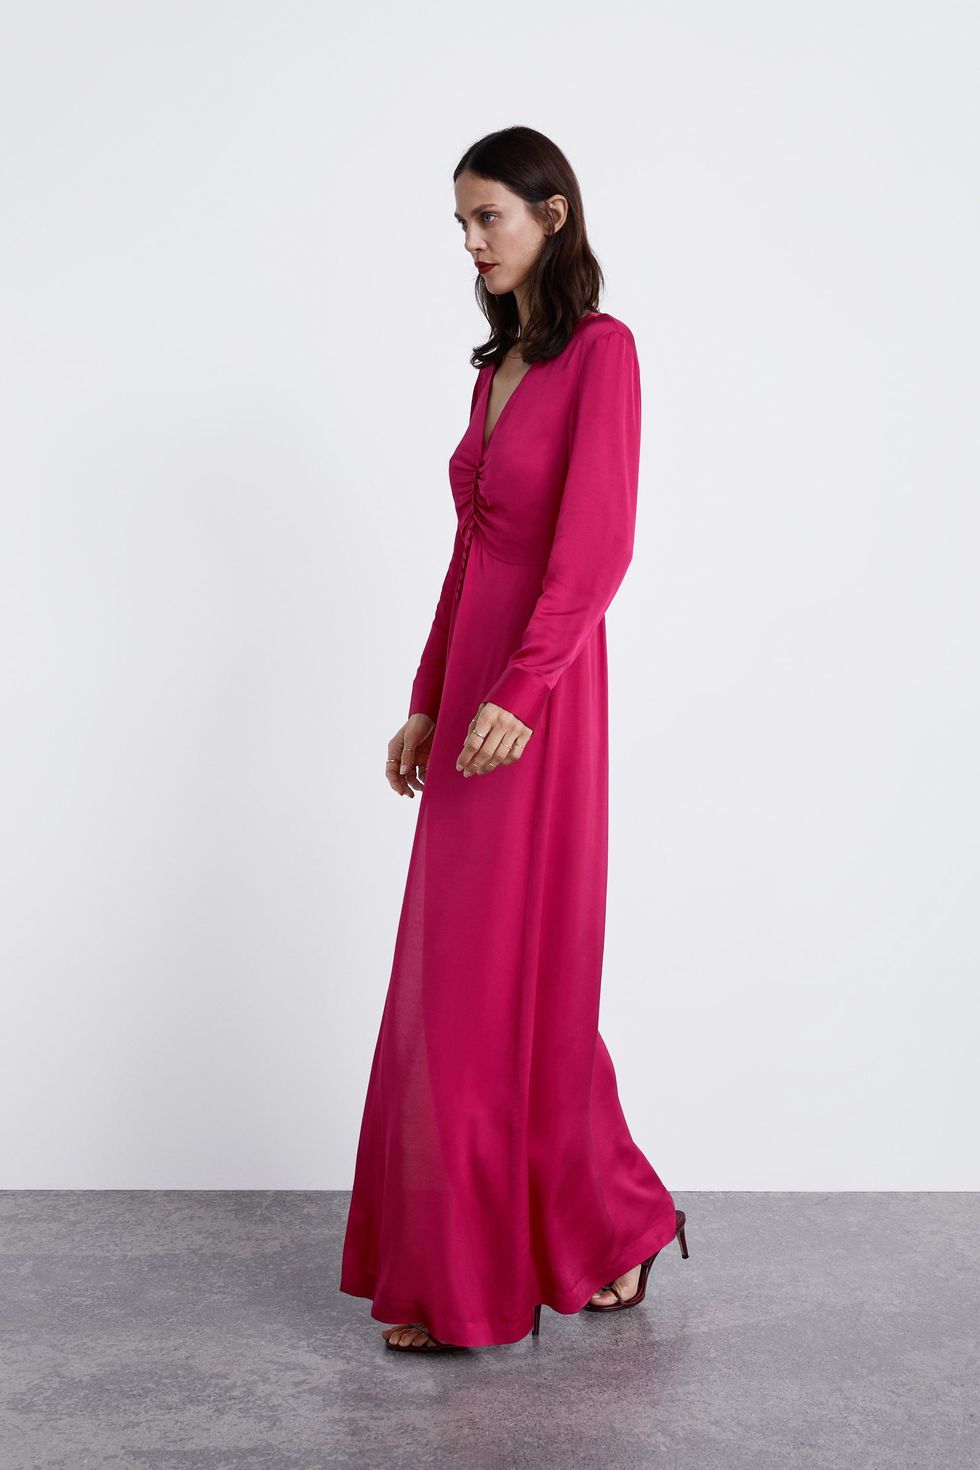 Asociación popurrí Desconocido Zara acaba de sacar a la venta el vestido de fiesta más bonito de su  historia - Zara vende un vestido espectacular en todas las tallas